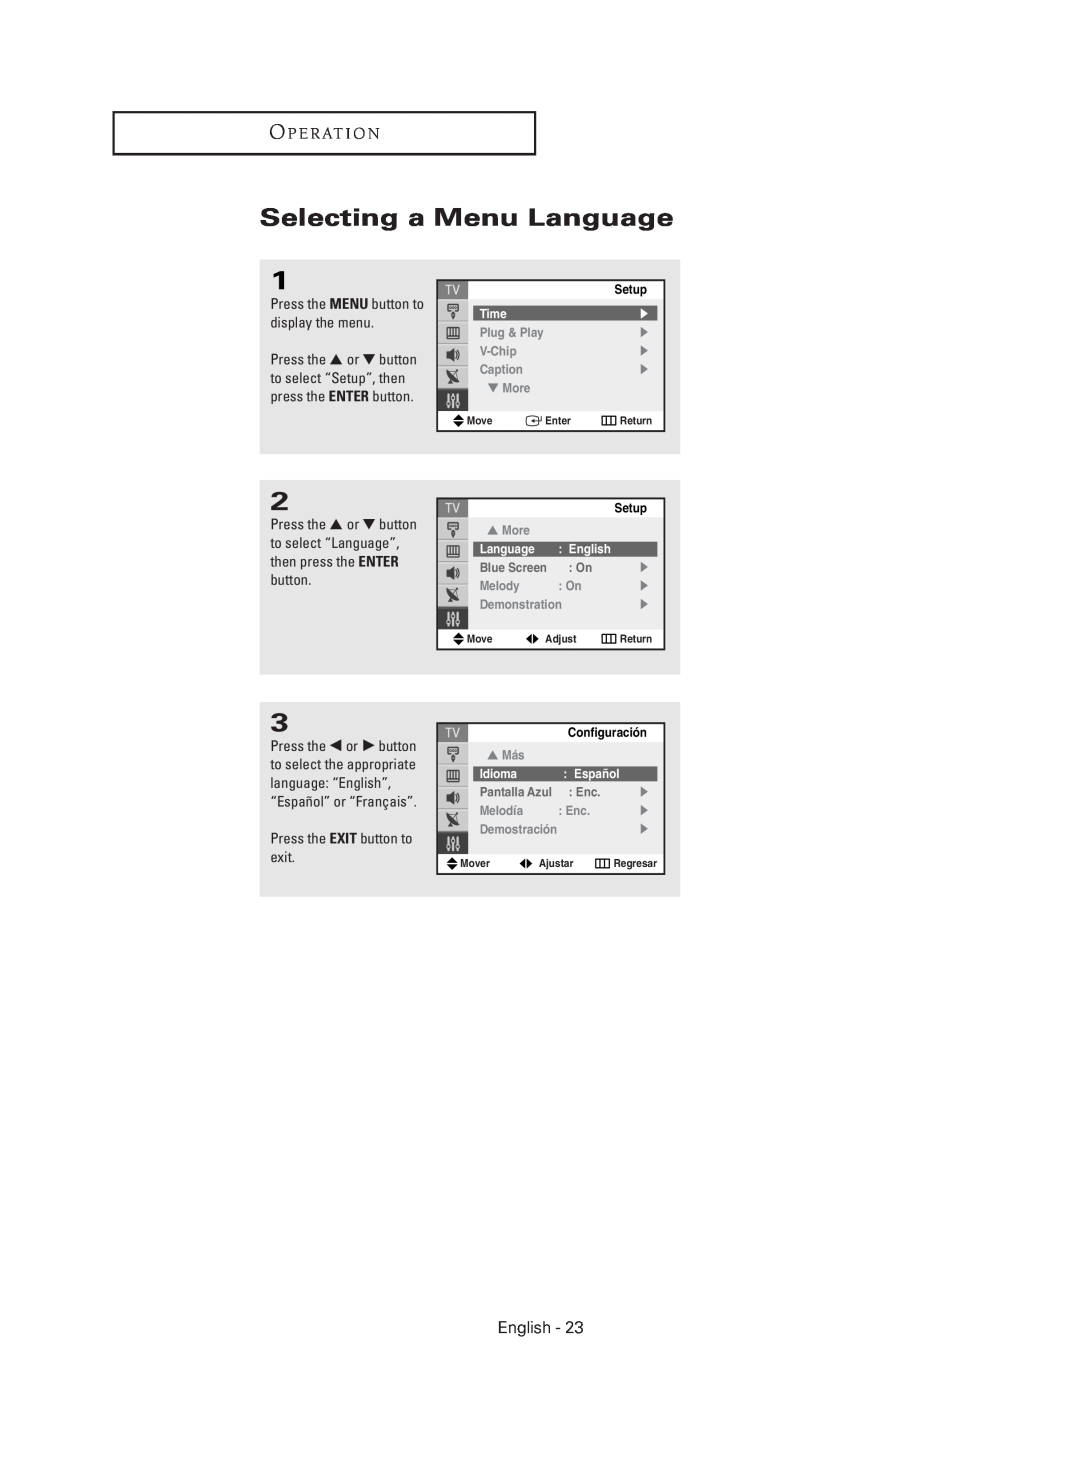 Samsung TX-R2735G Selecting a Menu Language, O P E R At I O N, English, Press the EXIT button to exit, Time, Configuración 